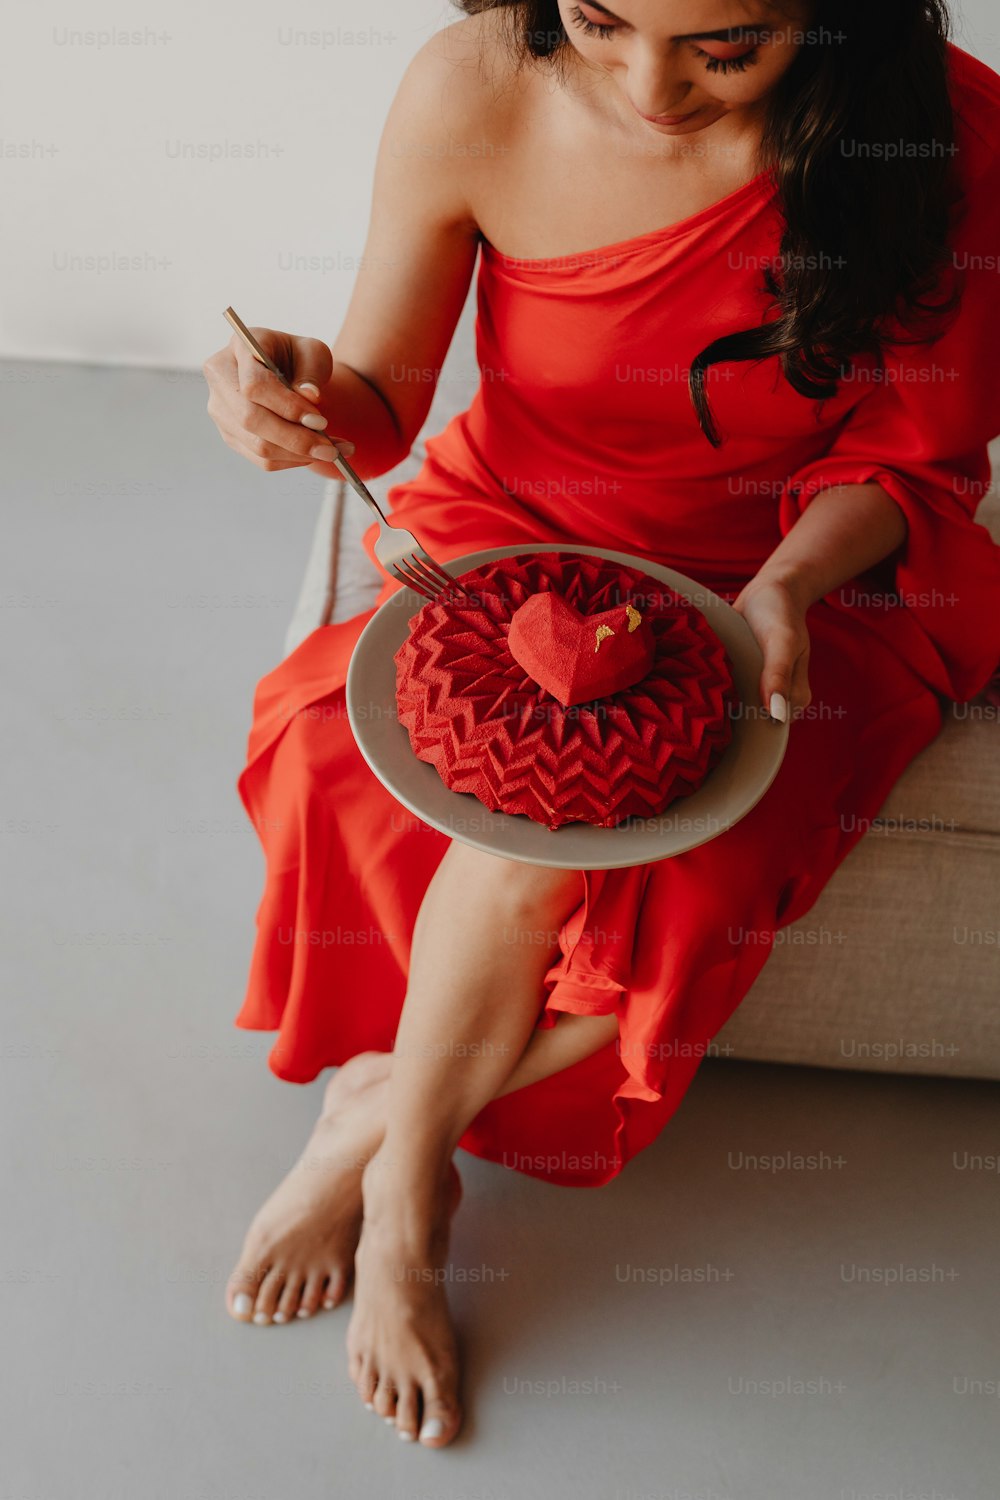 하트 모�양의 케이크를 들고 빨간 드레스를 입은 여자